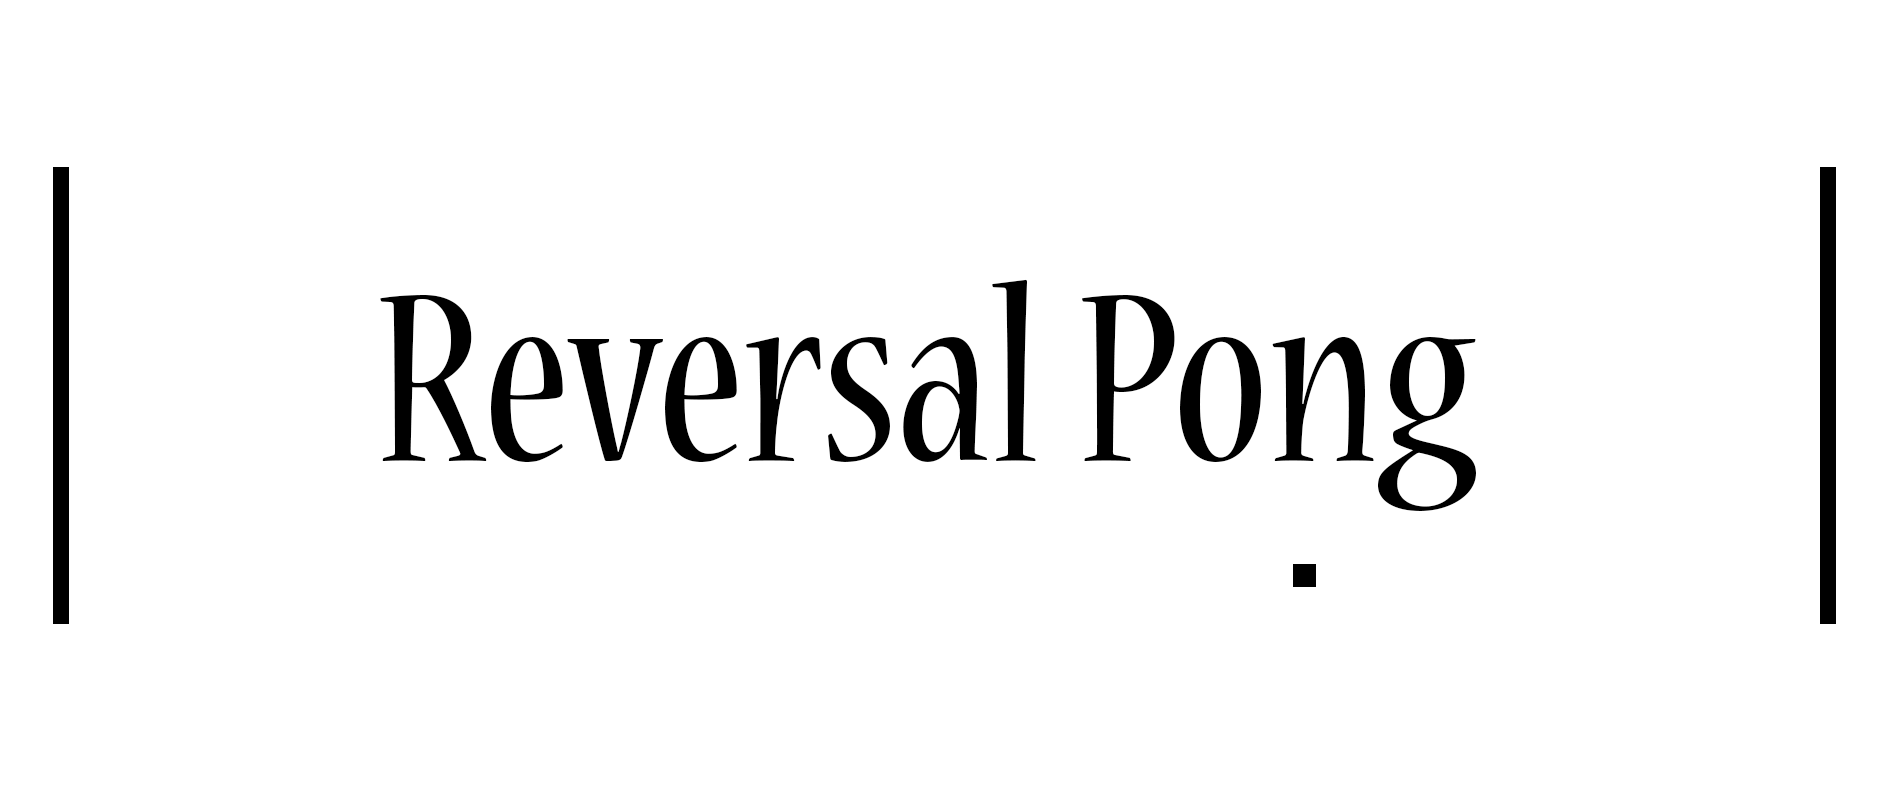 Reversal Pong